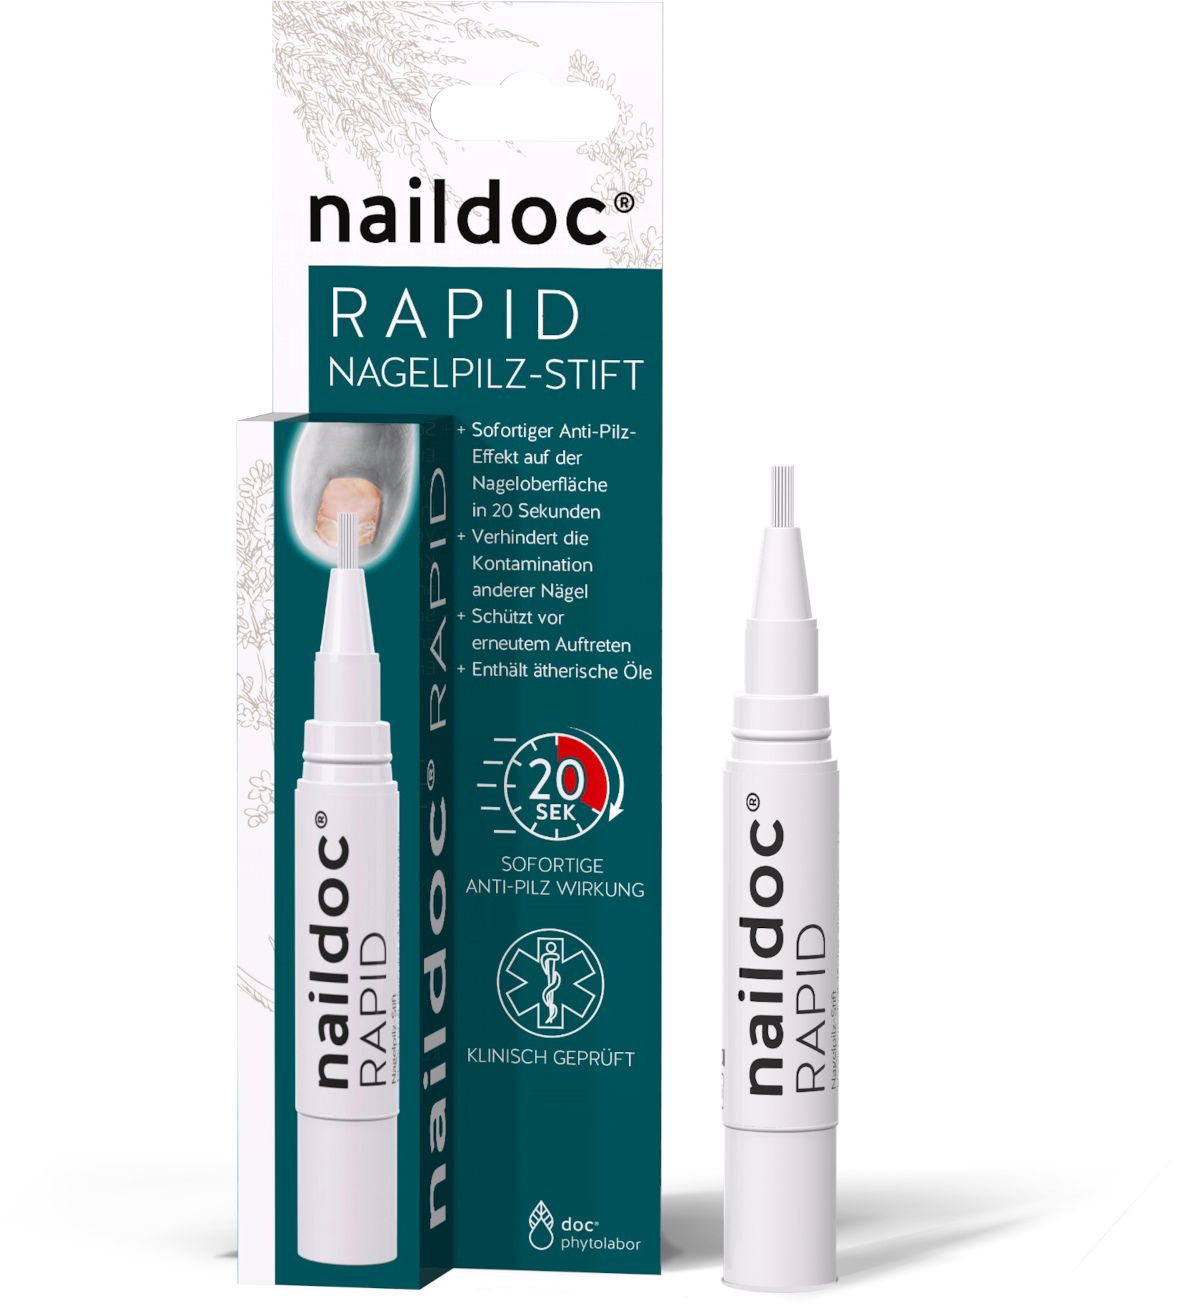 naildoc® RAPID NAGELPILZ-STIFT